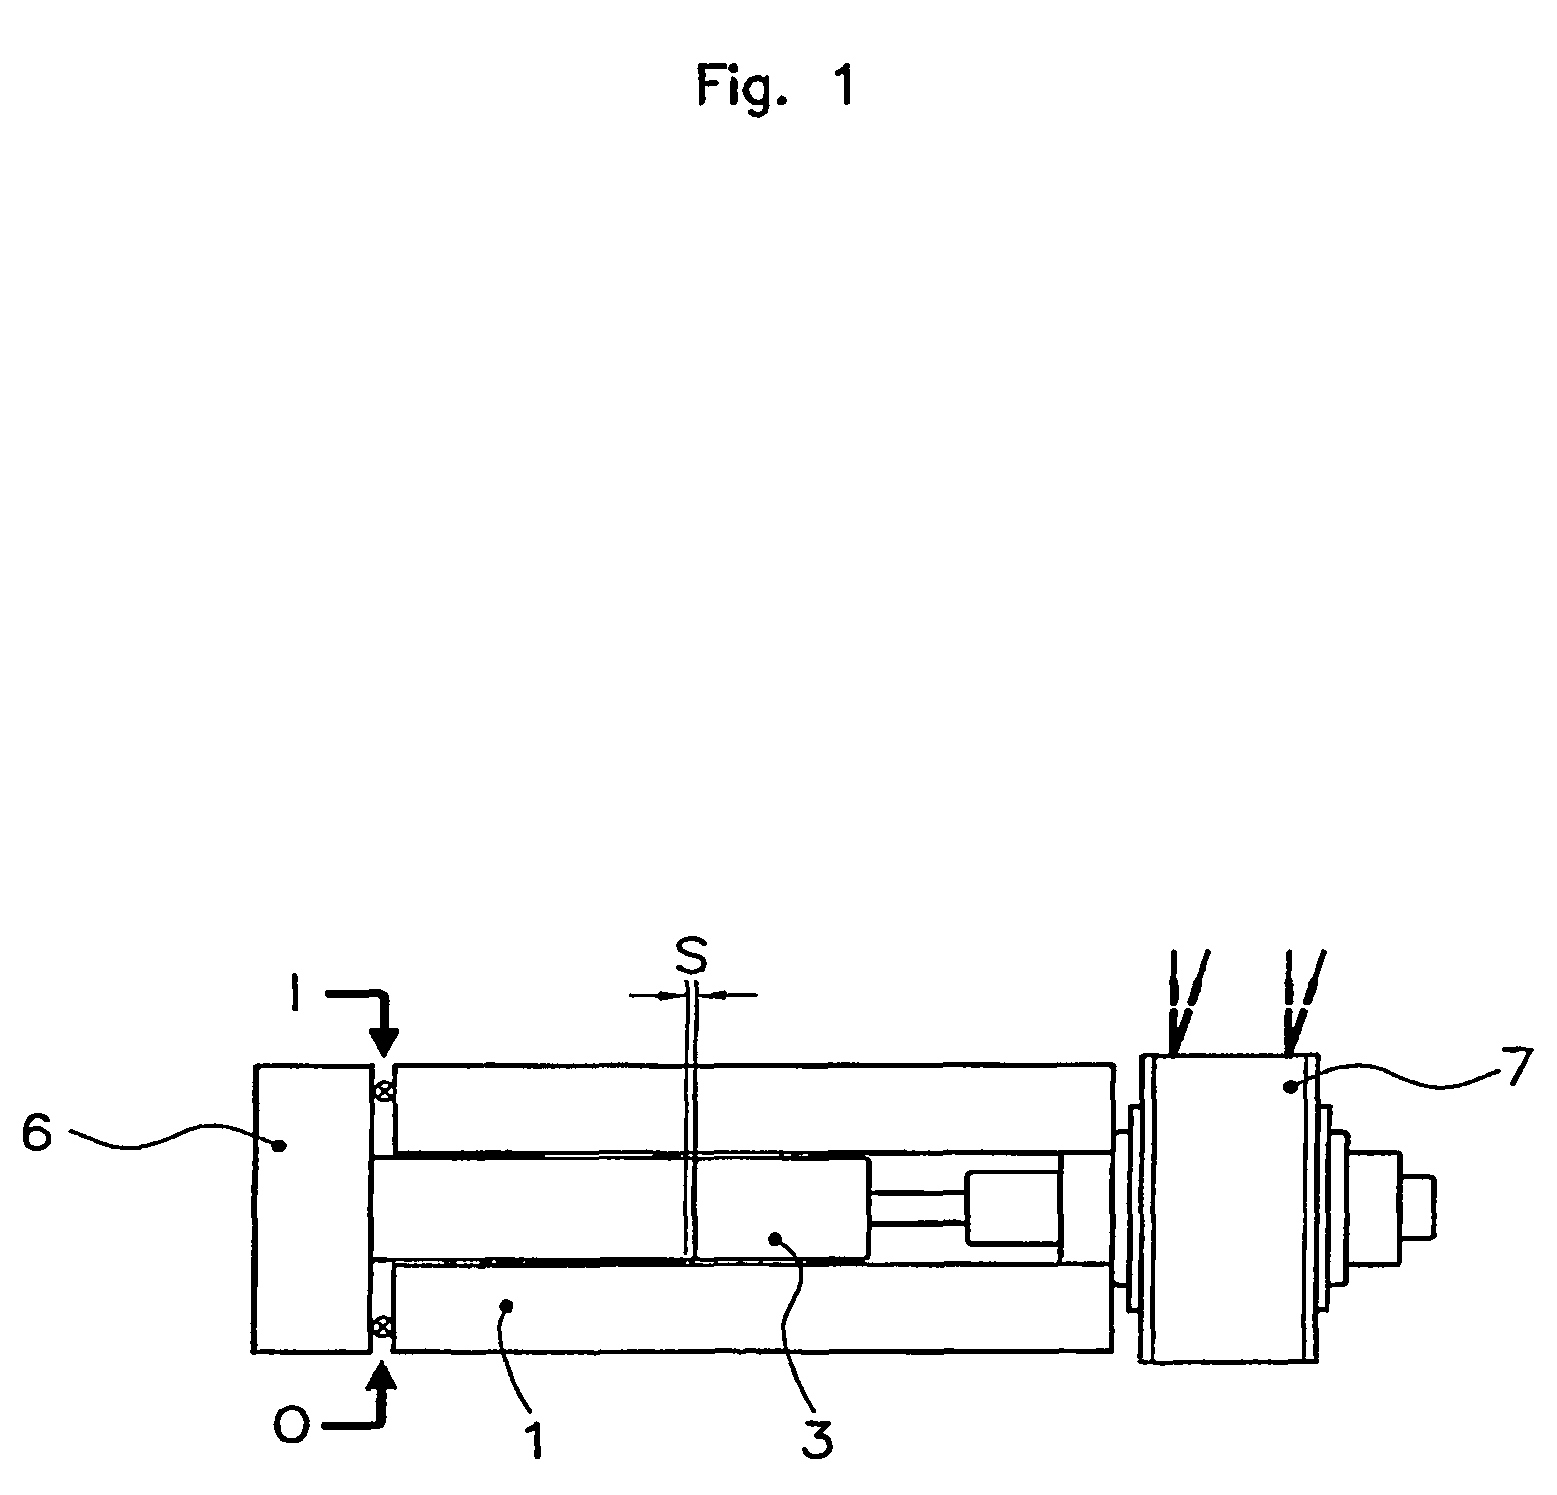 Dosing pump for a liquid fuel additive